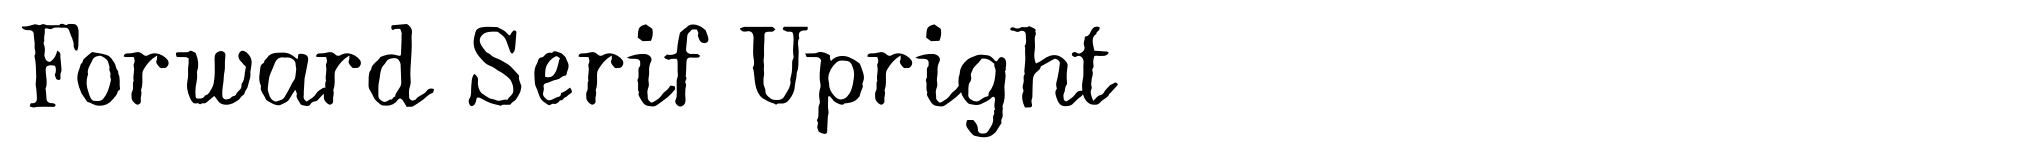 Forward Serif Upright image